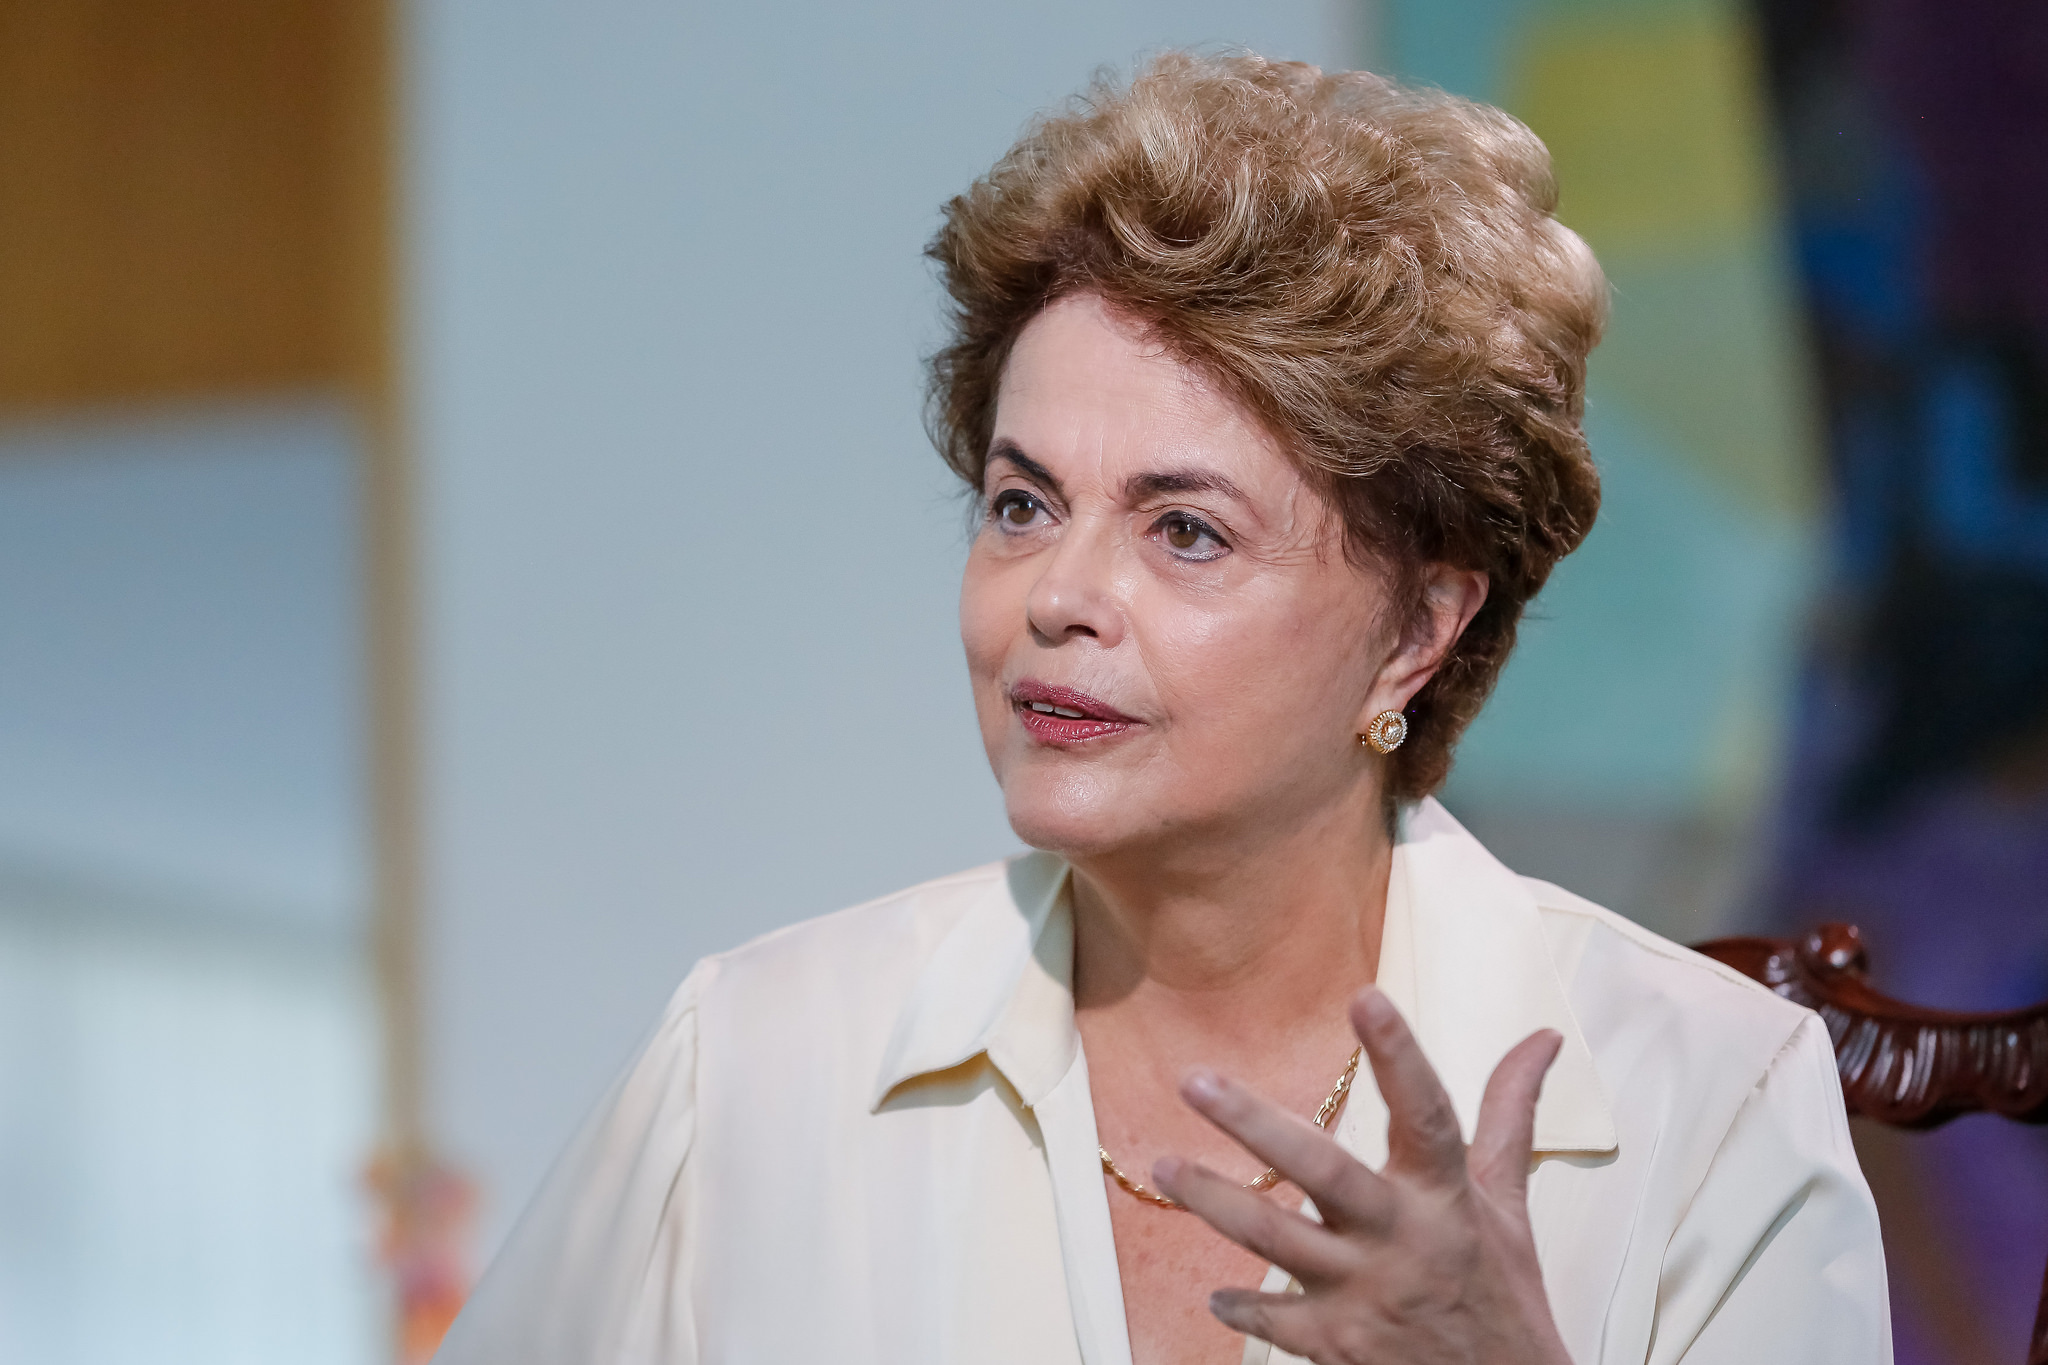 Primeira tentação do golpe é calar a divergência, afirma Dilma